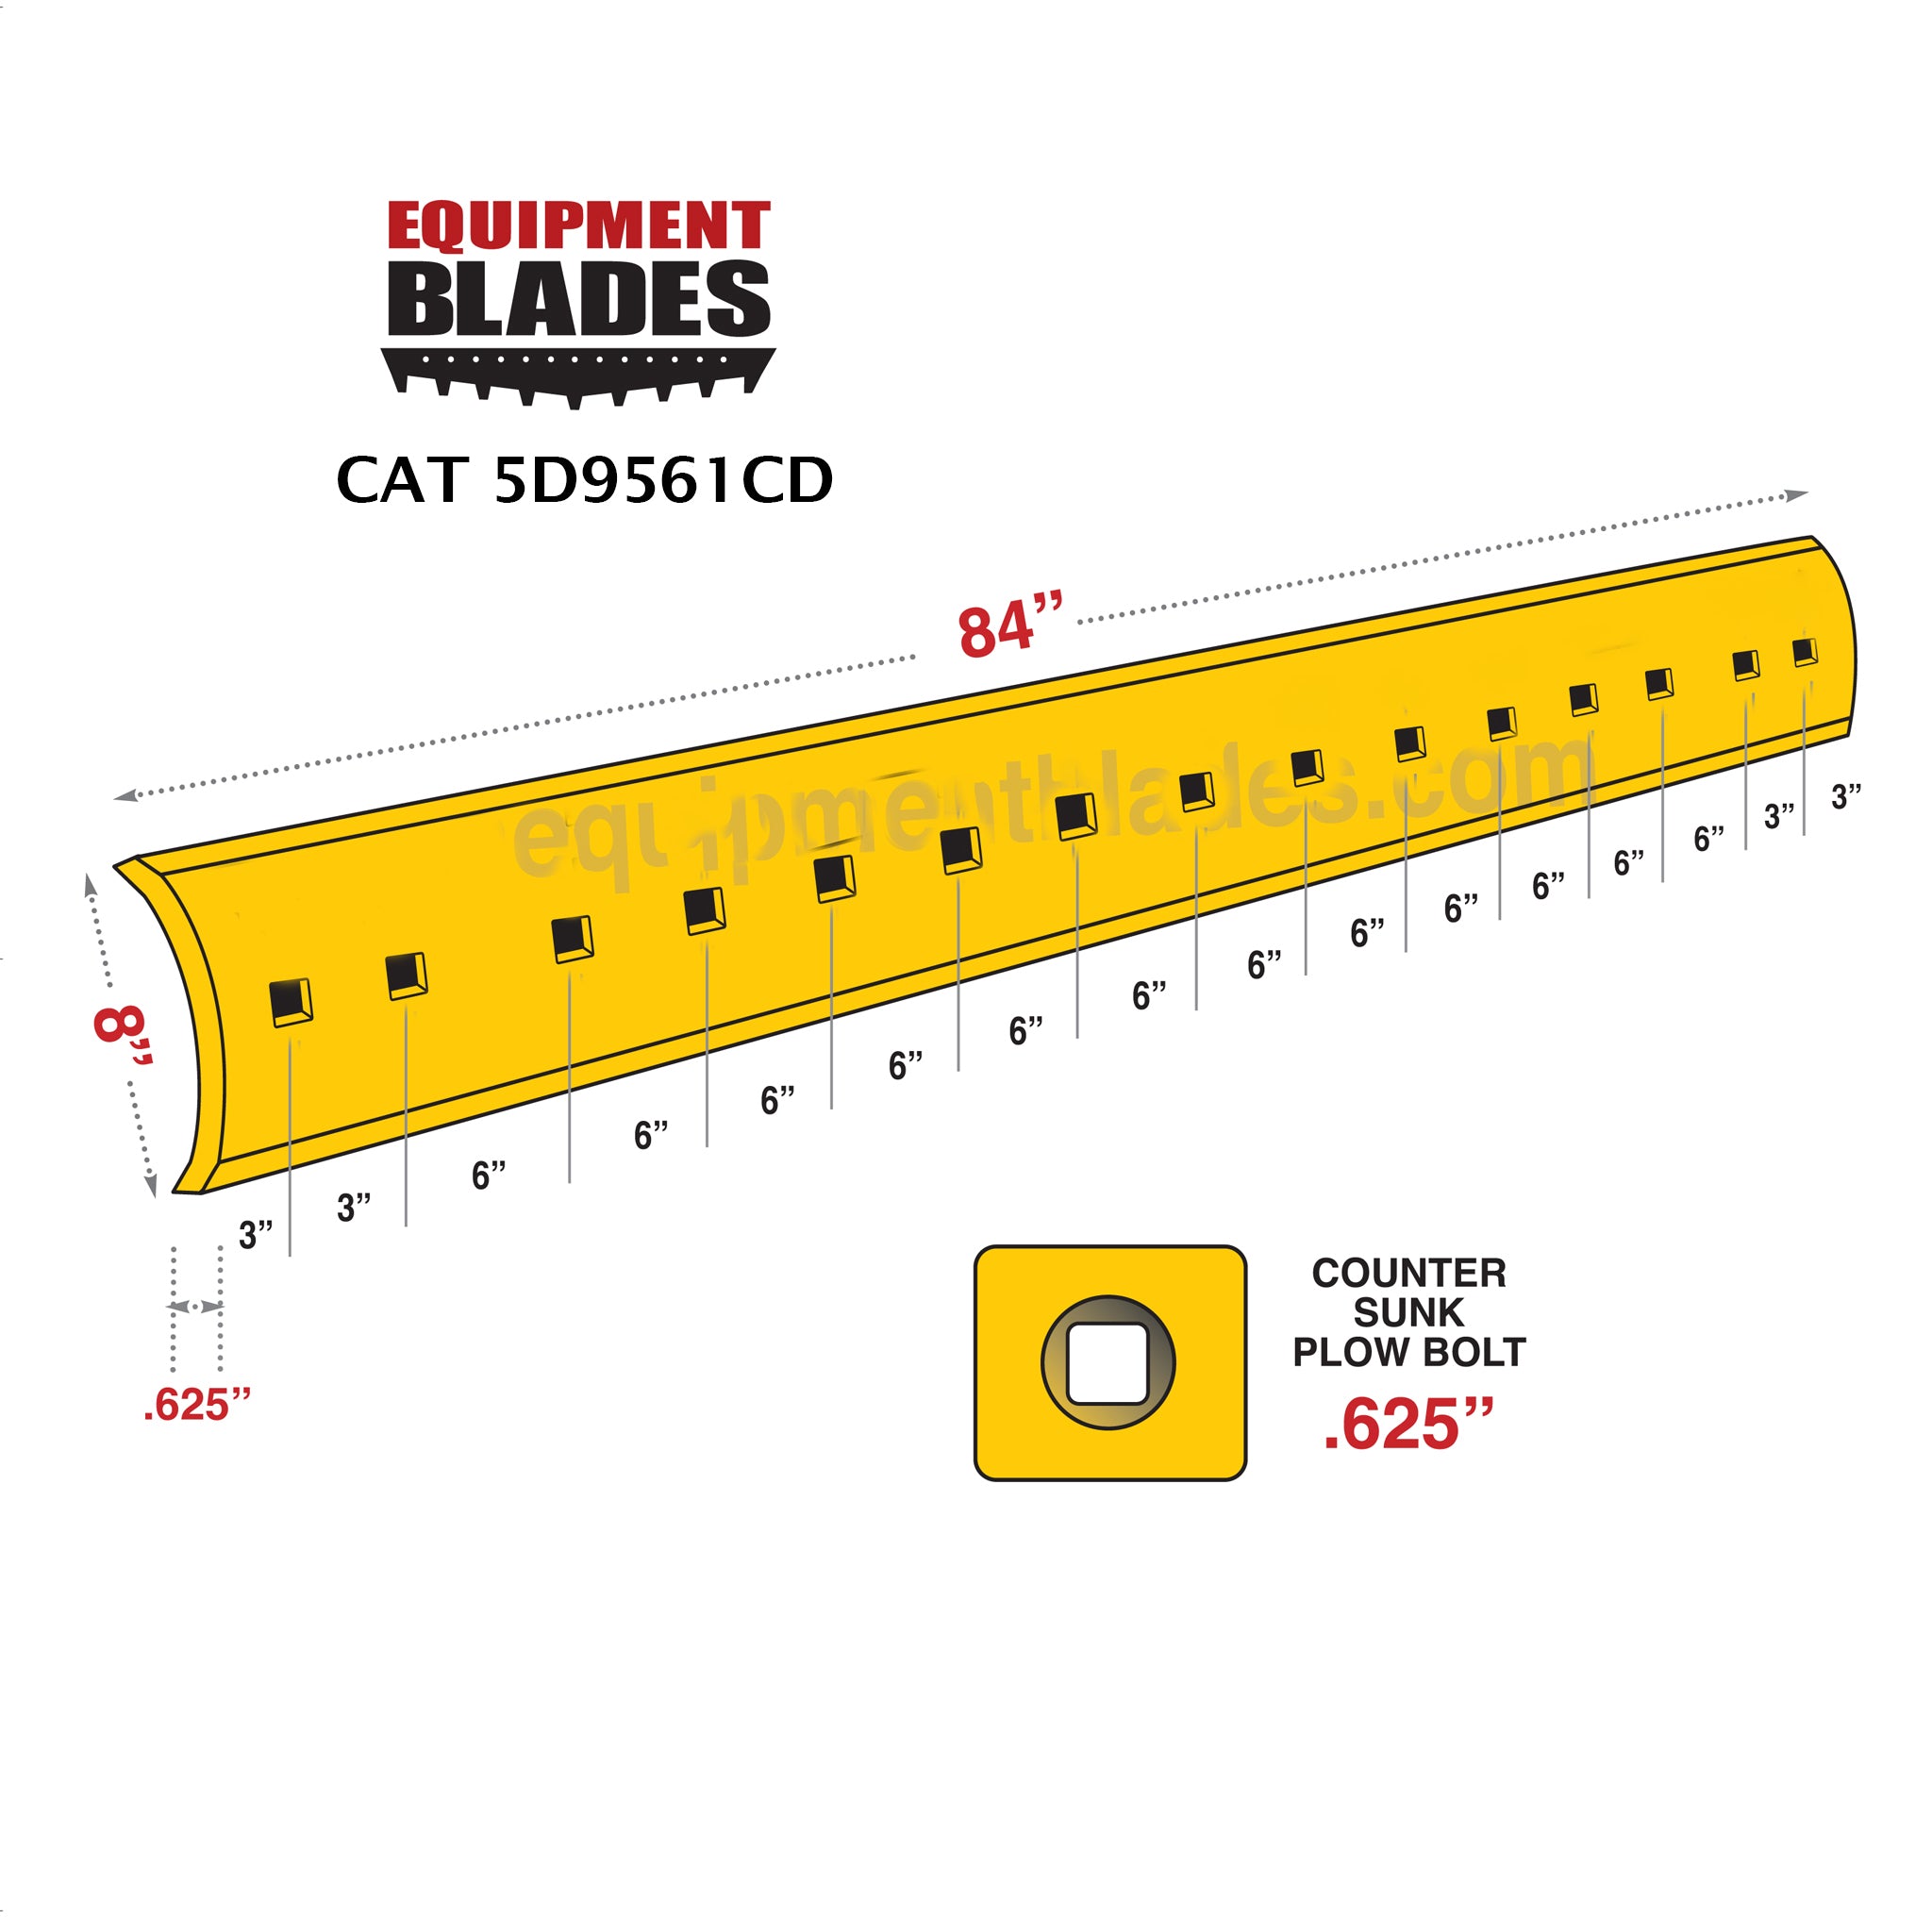 Cat 5D9561CD-Equipment Blades Inc-Equipment Blades Inc